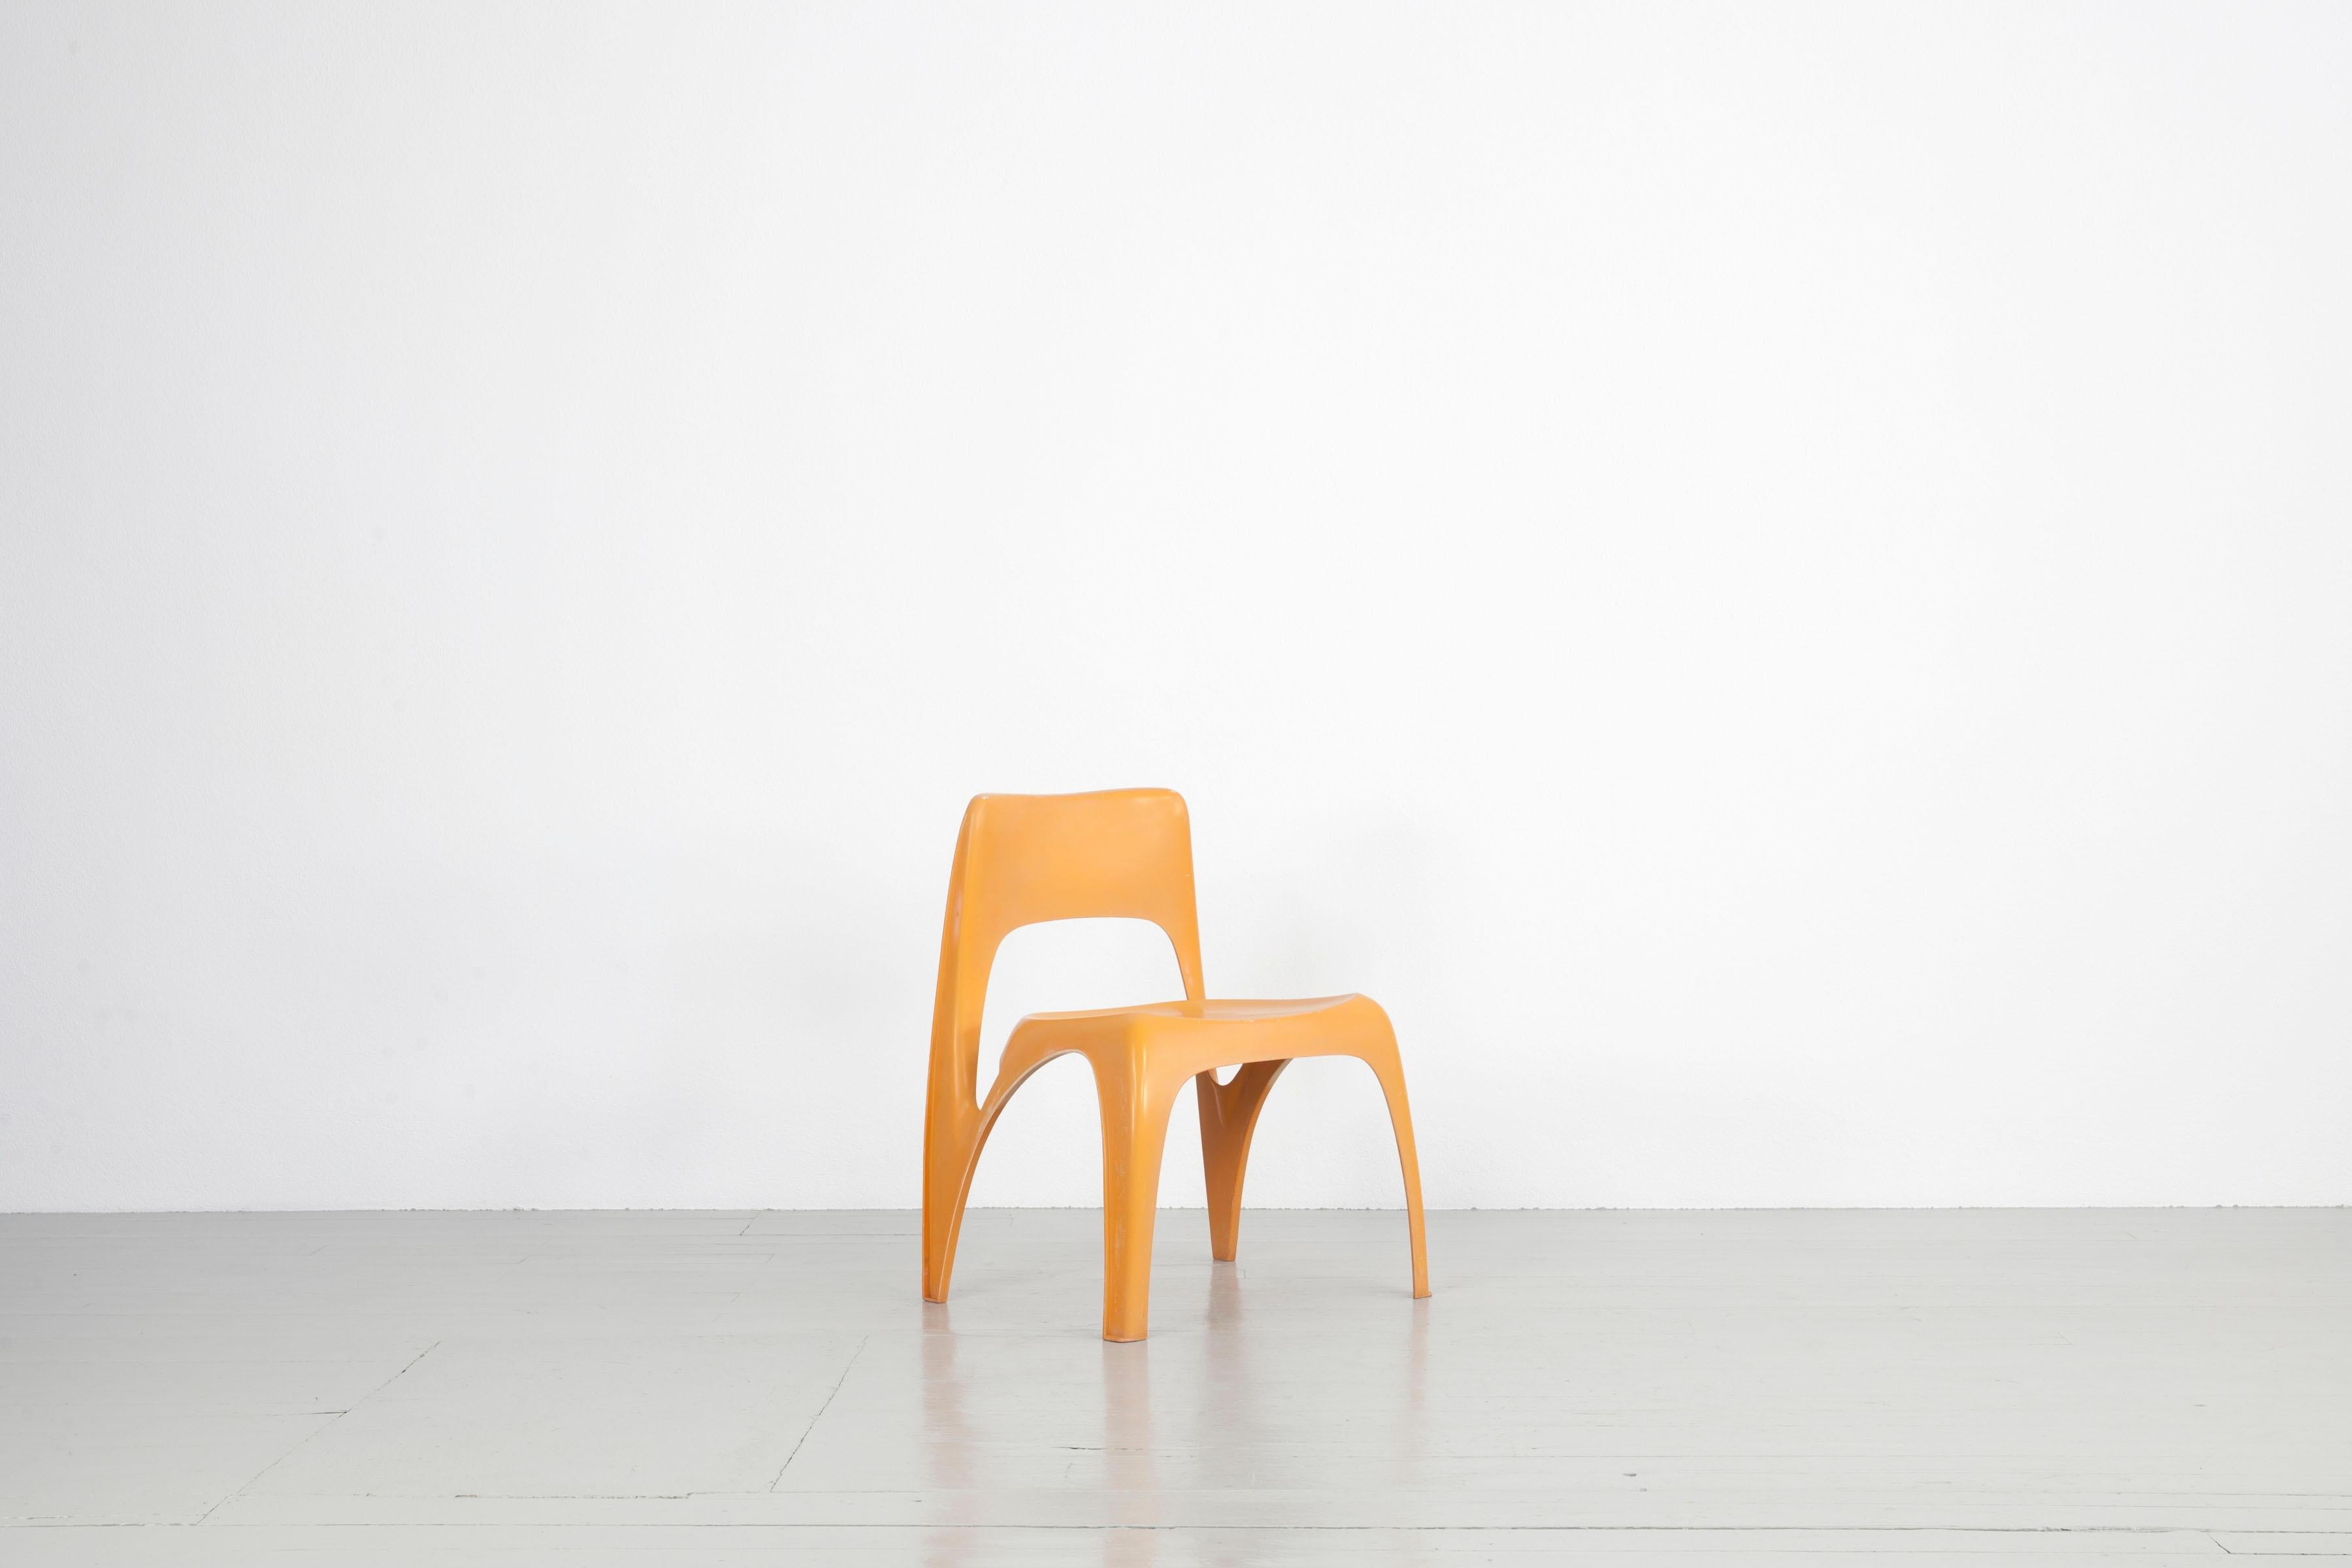 Cette chaise conçue par Preben Fabricius a été fabriquée par Interplast en Allemagne dans les années 1970. Le site
les chaises empilables sont fabriquées en plastique renforcé de fibre de verre et présentent des signes d'usure dus à leur